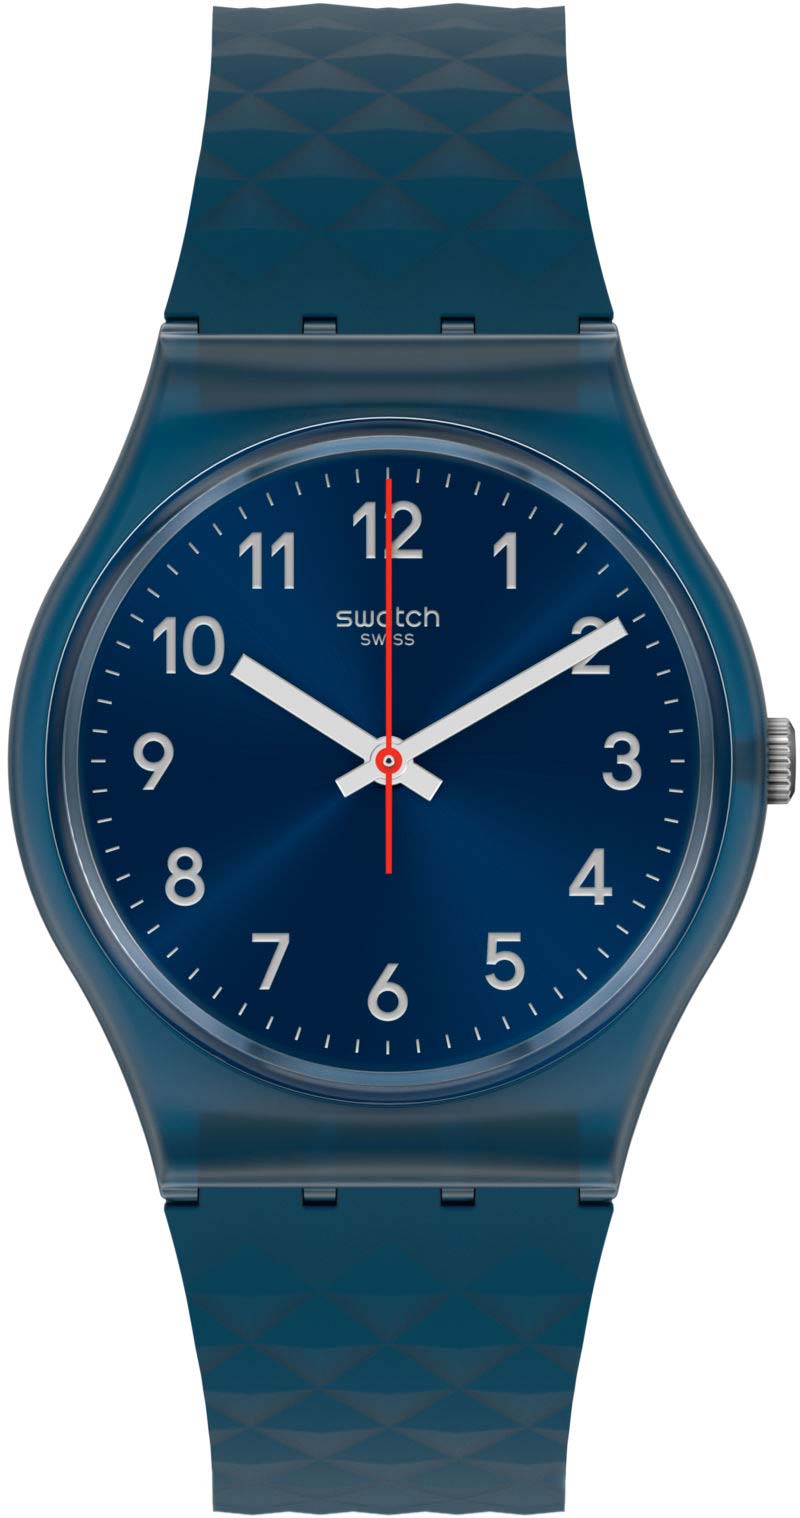 Швейцарские наручные часы Swatch GN271